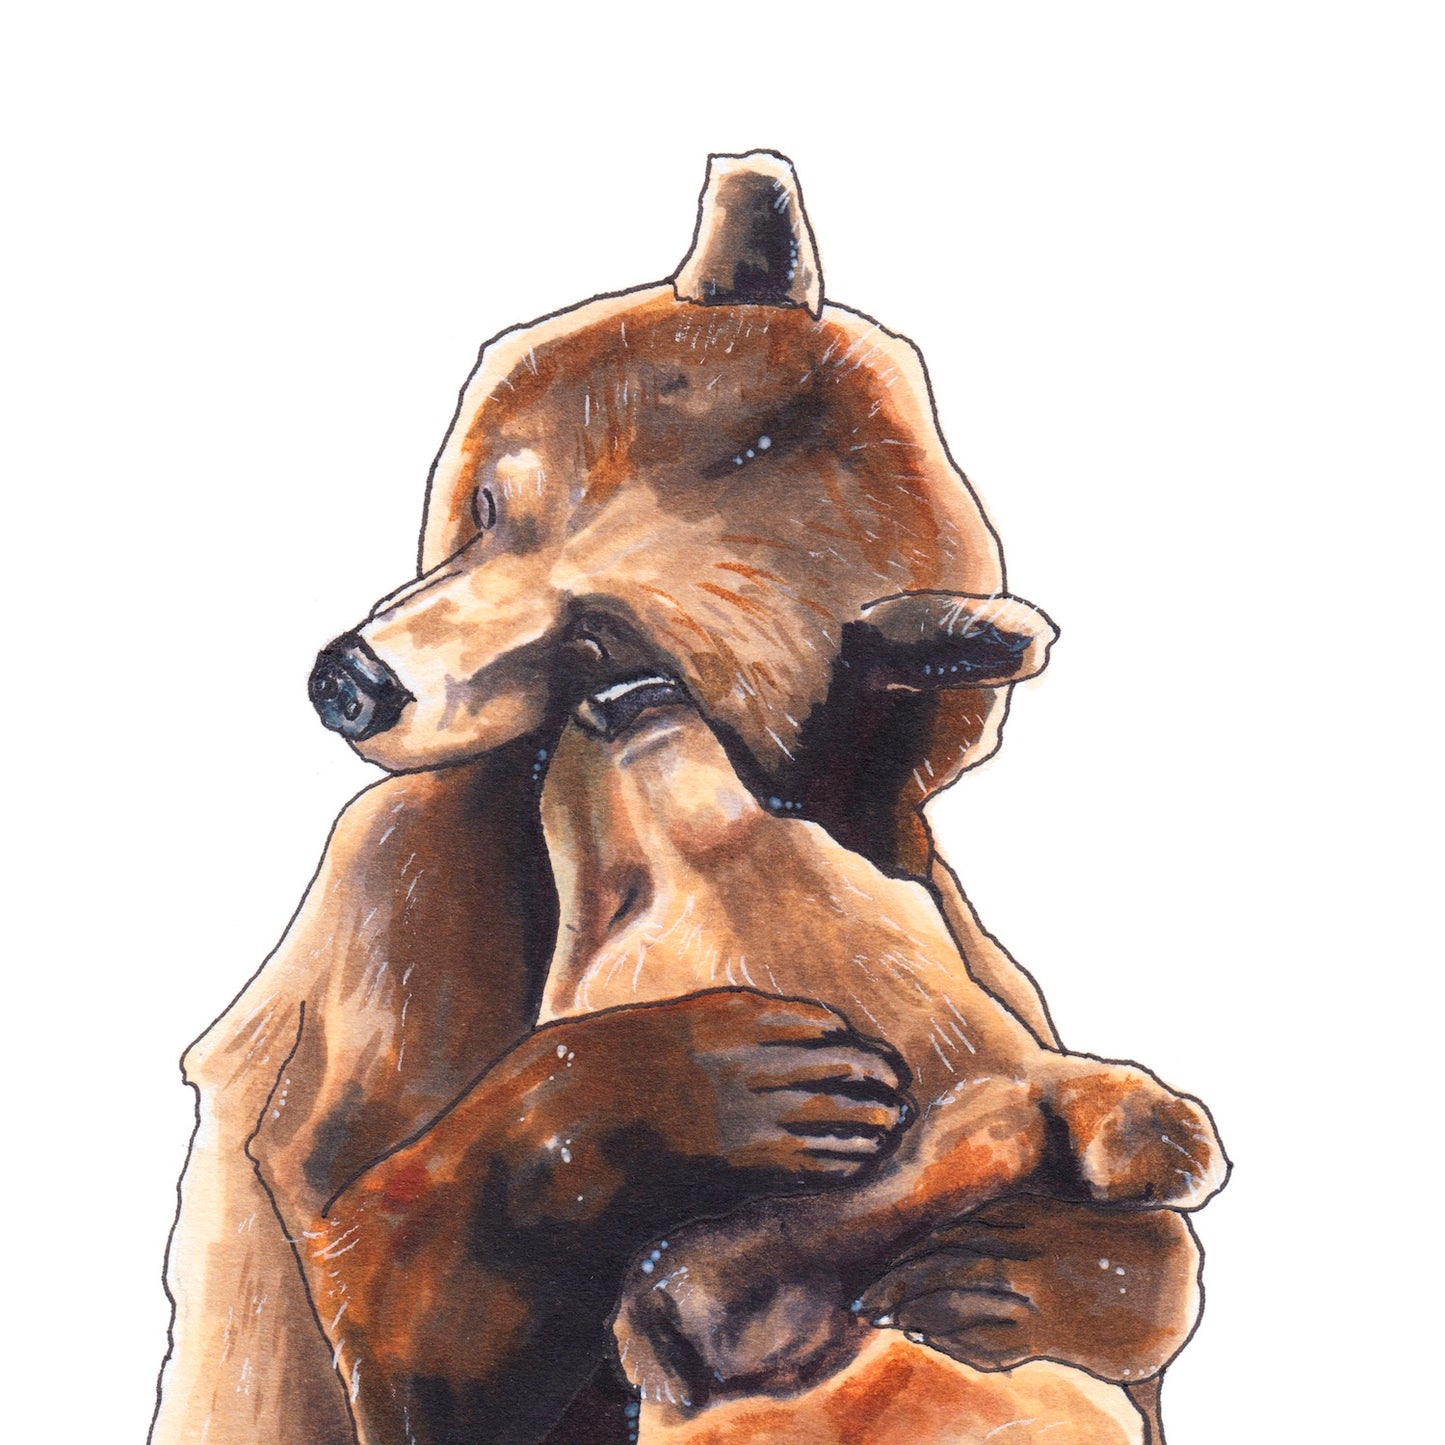 Ölelés // Bear hug